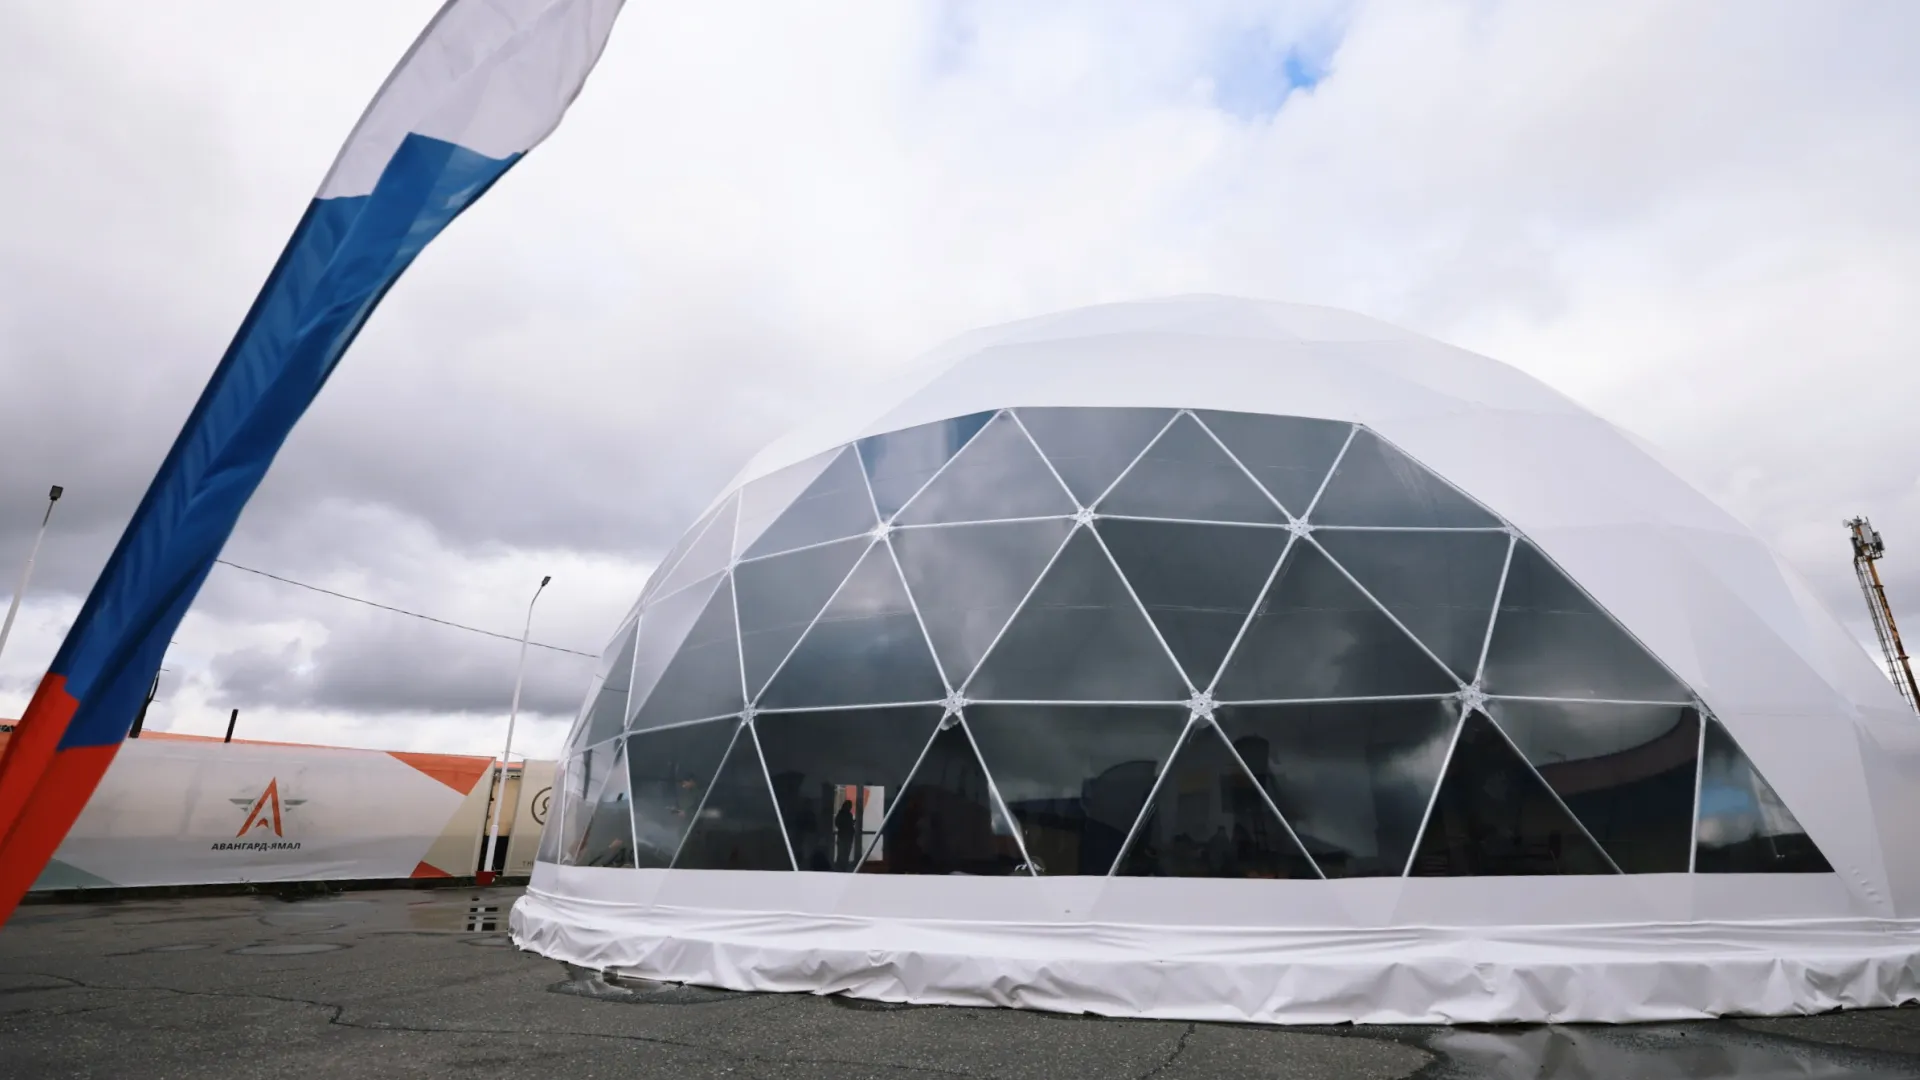 Шлем космонавта? Нет, это новый шатер для ребят, которые приезжают в региональный центр патриотического воспитания «Авангард» на сборы.